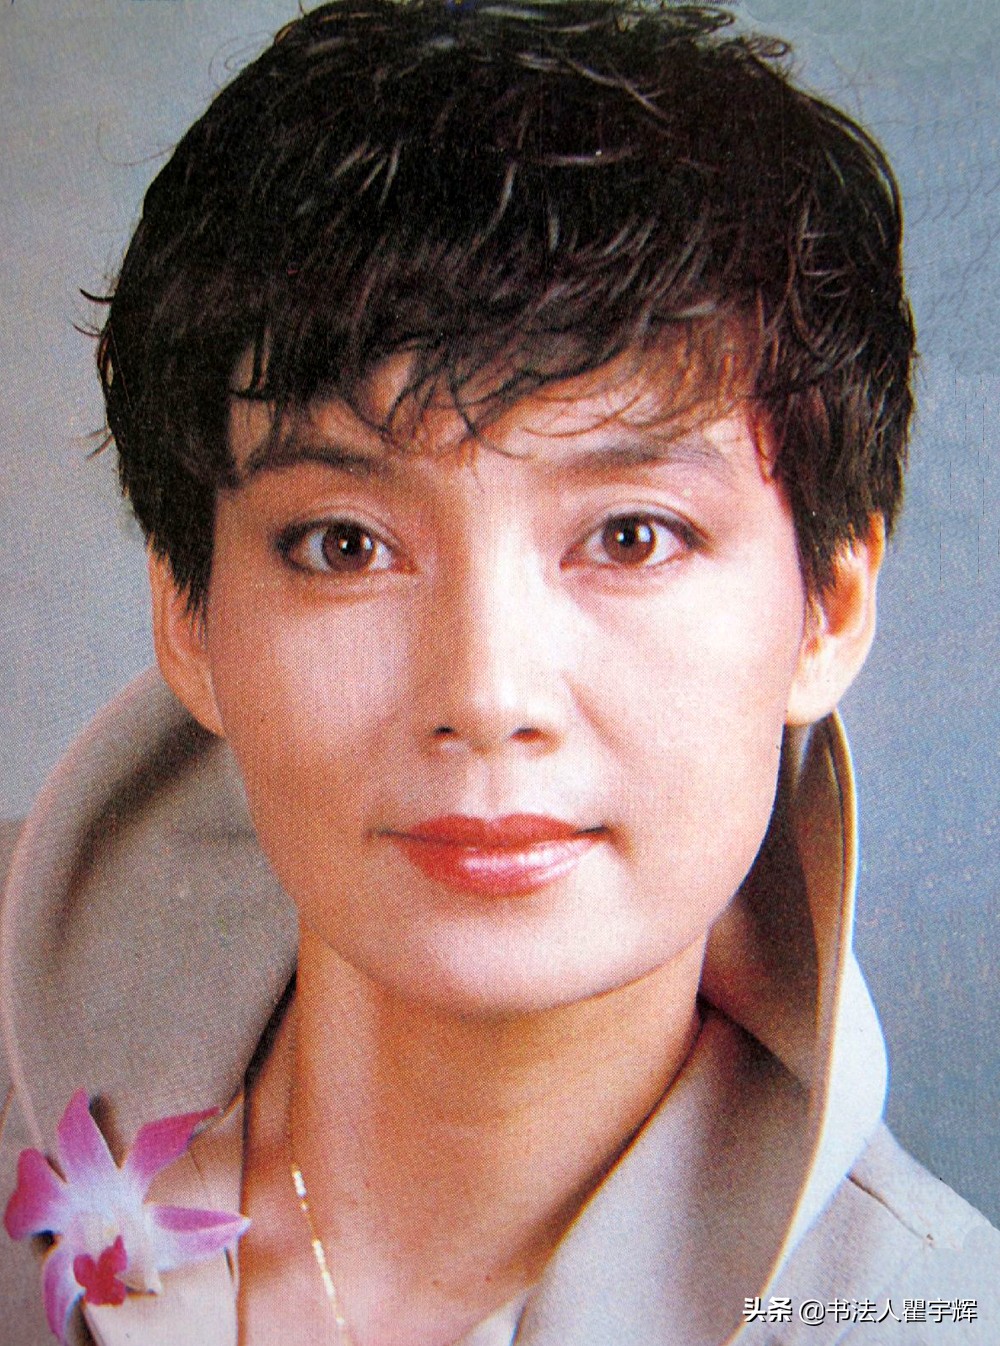 1/ 12 潘虹,原名刘蓉,1954年出生于上海一知识分子家庭,原籍江苏常熟.